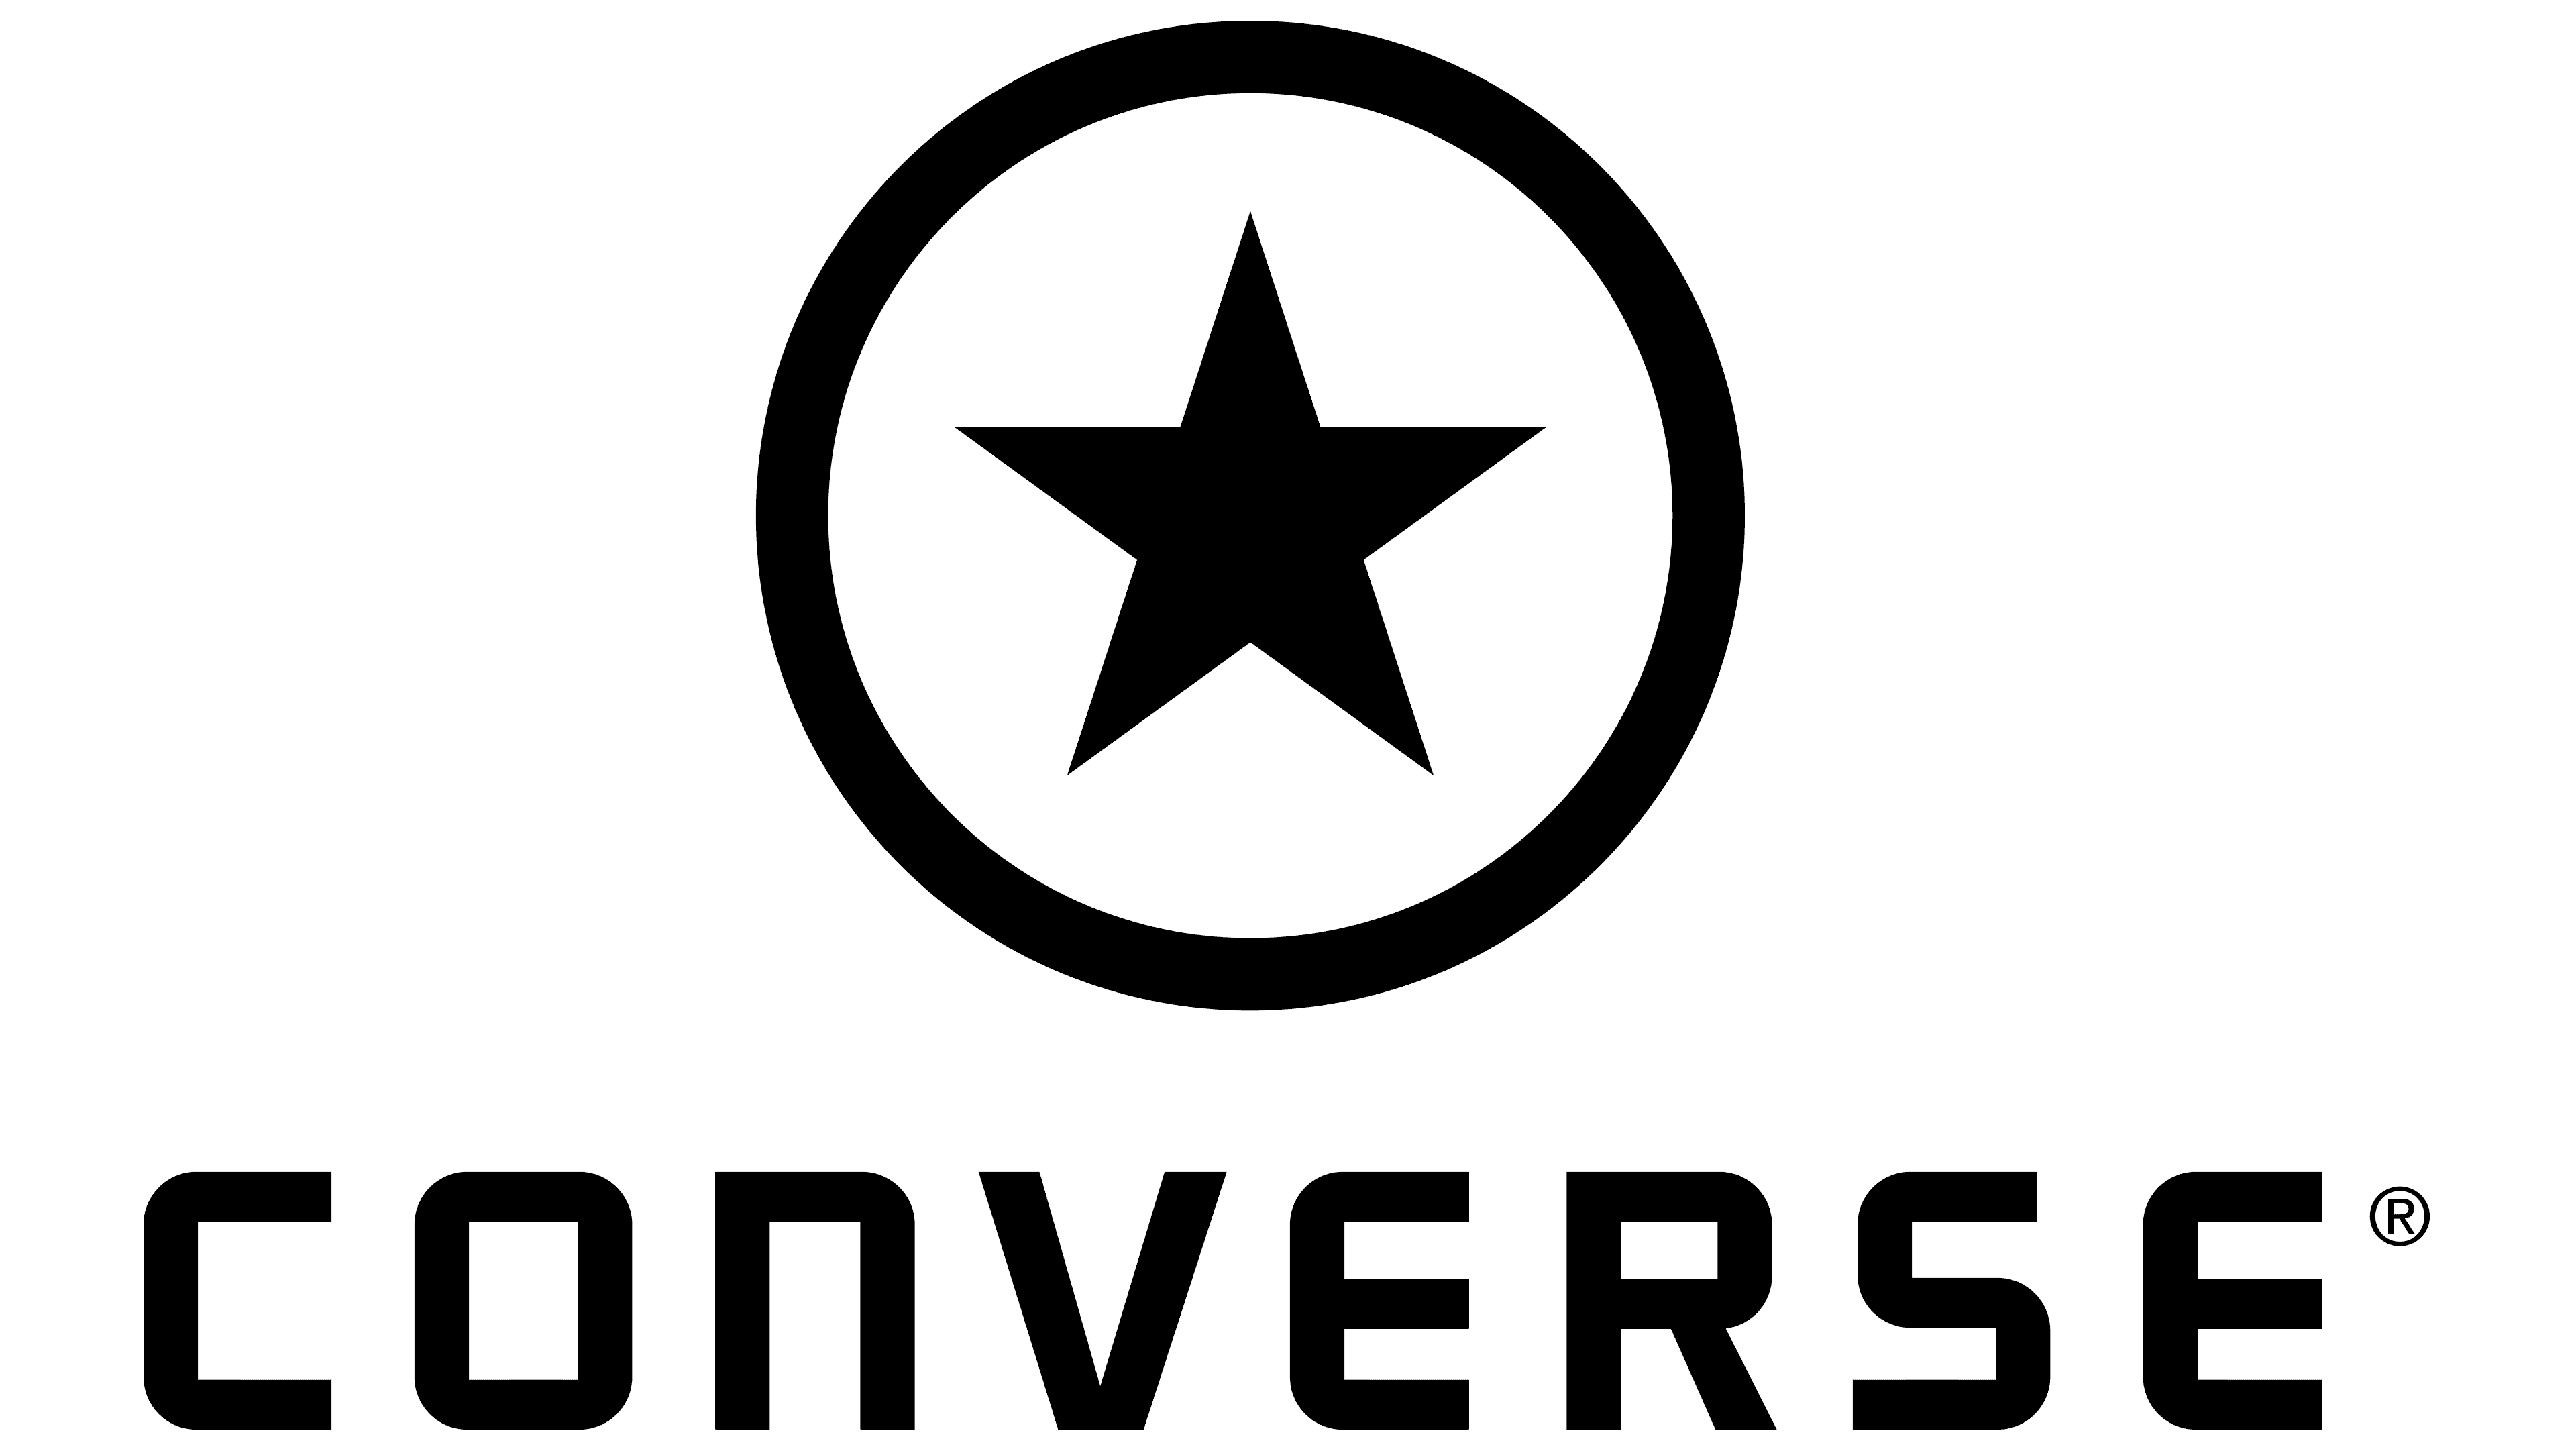 Sejarah dan Signifikansi Desain Bintang pada Sepatu Converse